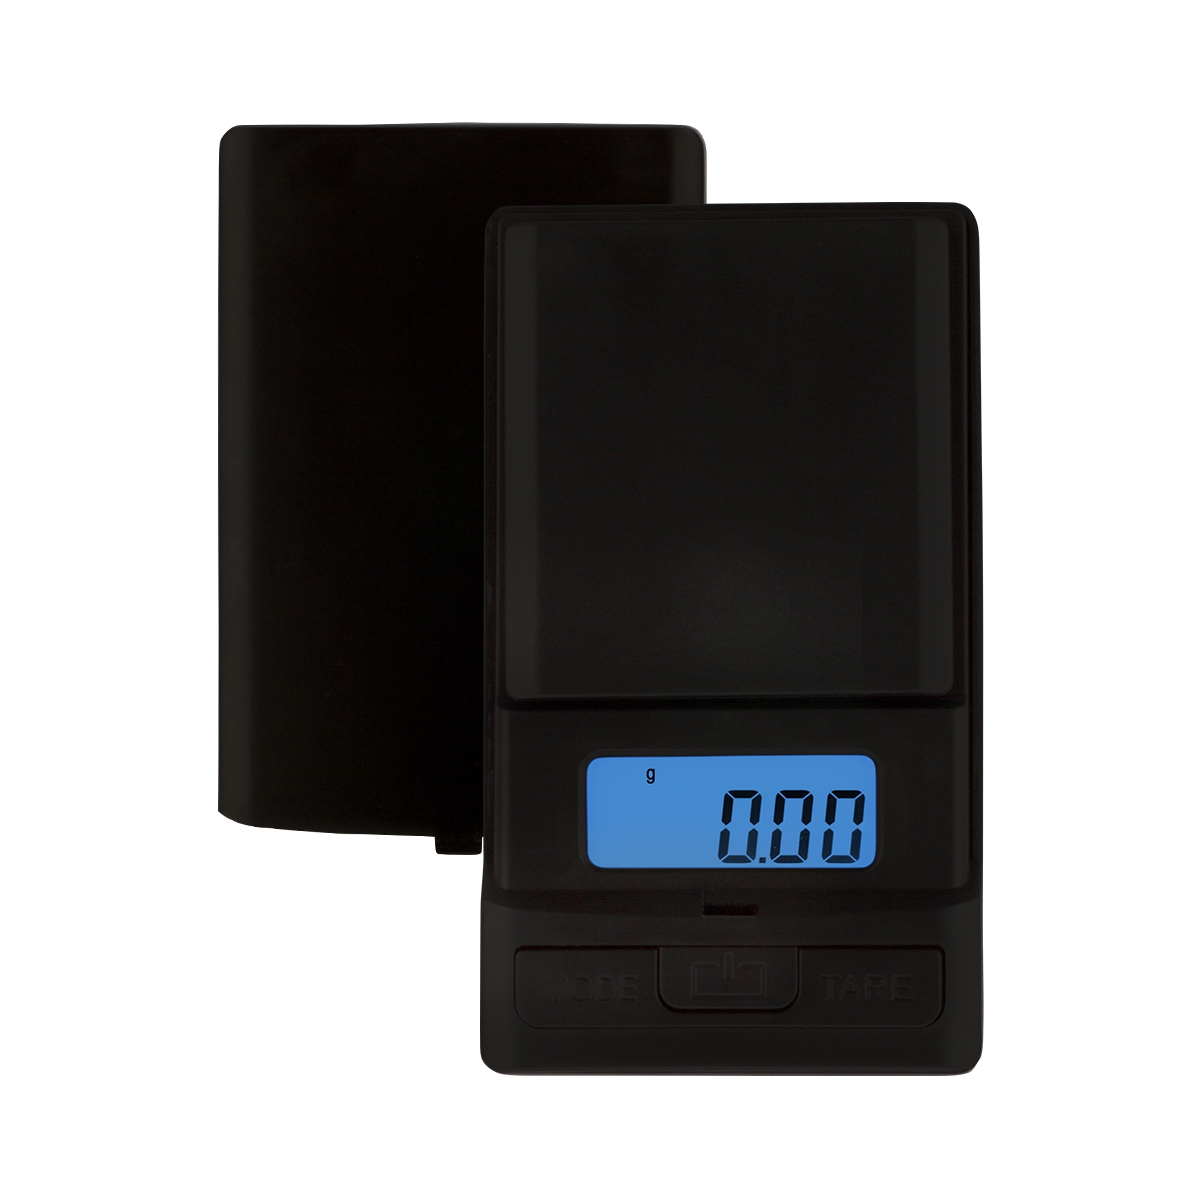 UNIWIGH - Báscula digital de gramos, báscula de peso gramo y onzas, mini  báscula electrónica de bolsillo inteligente